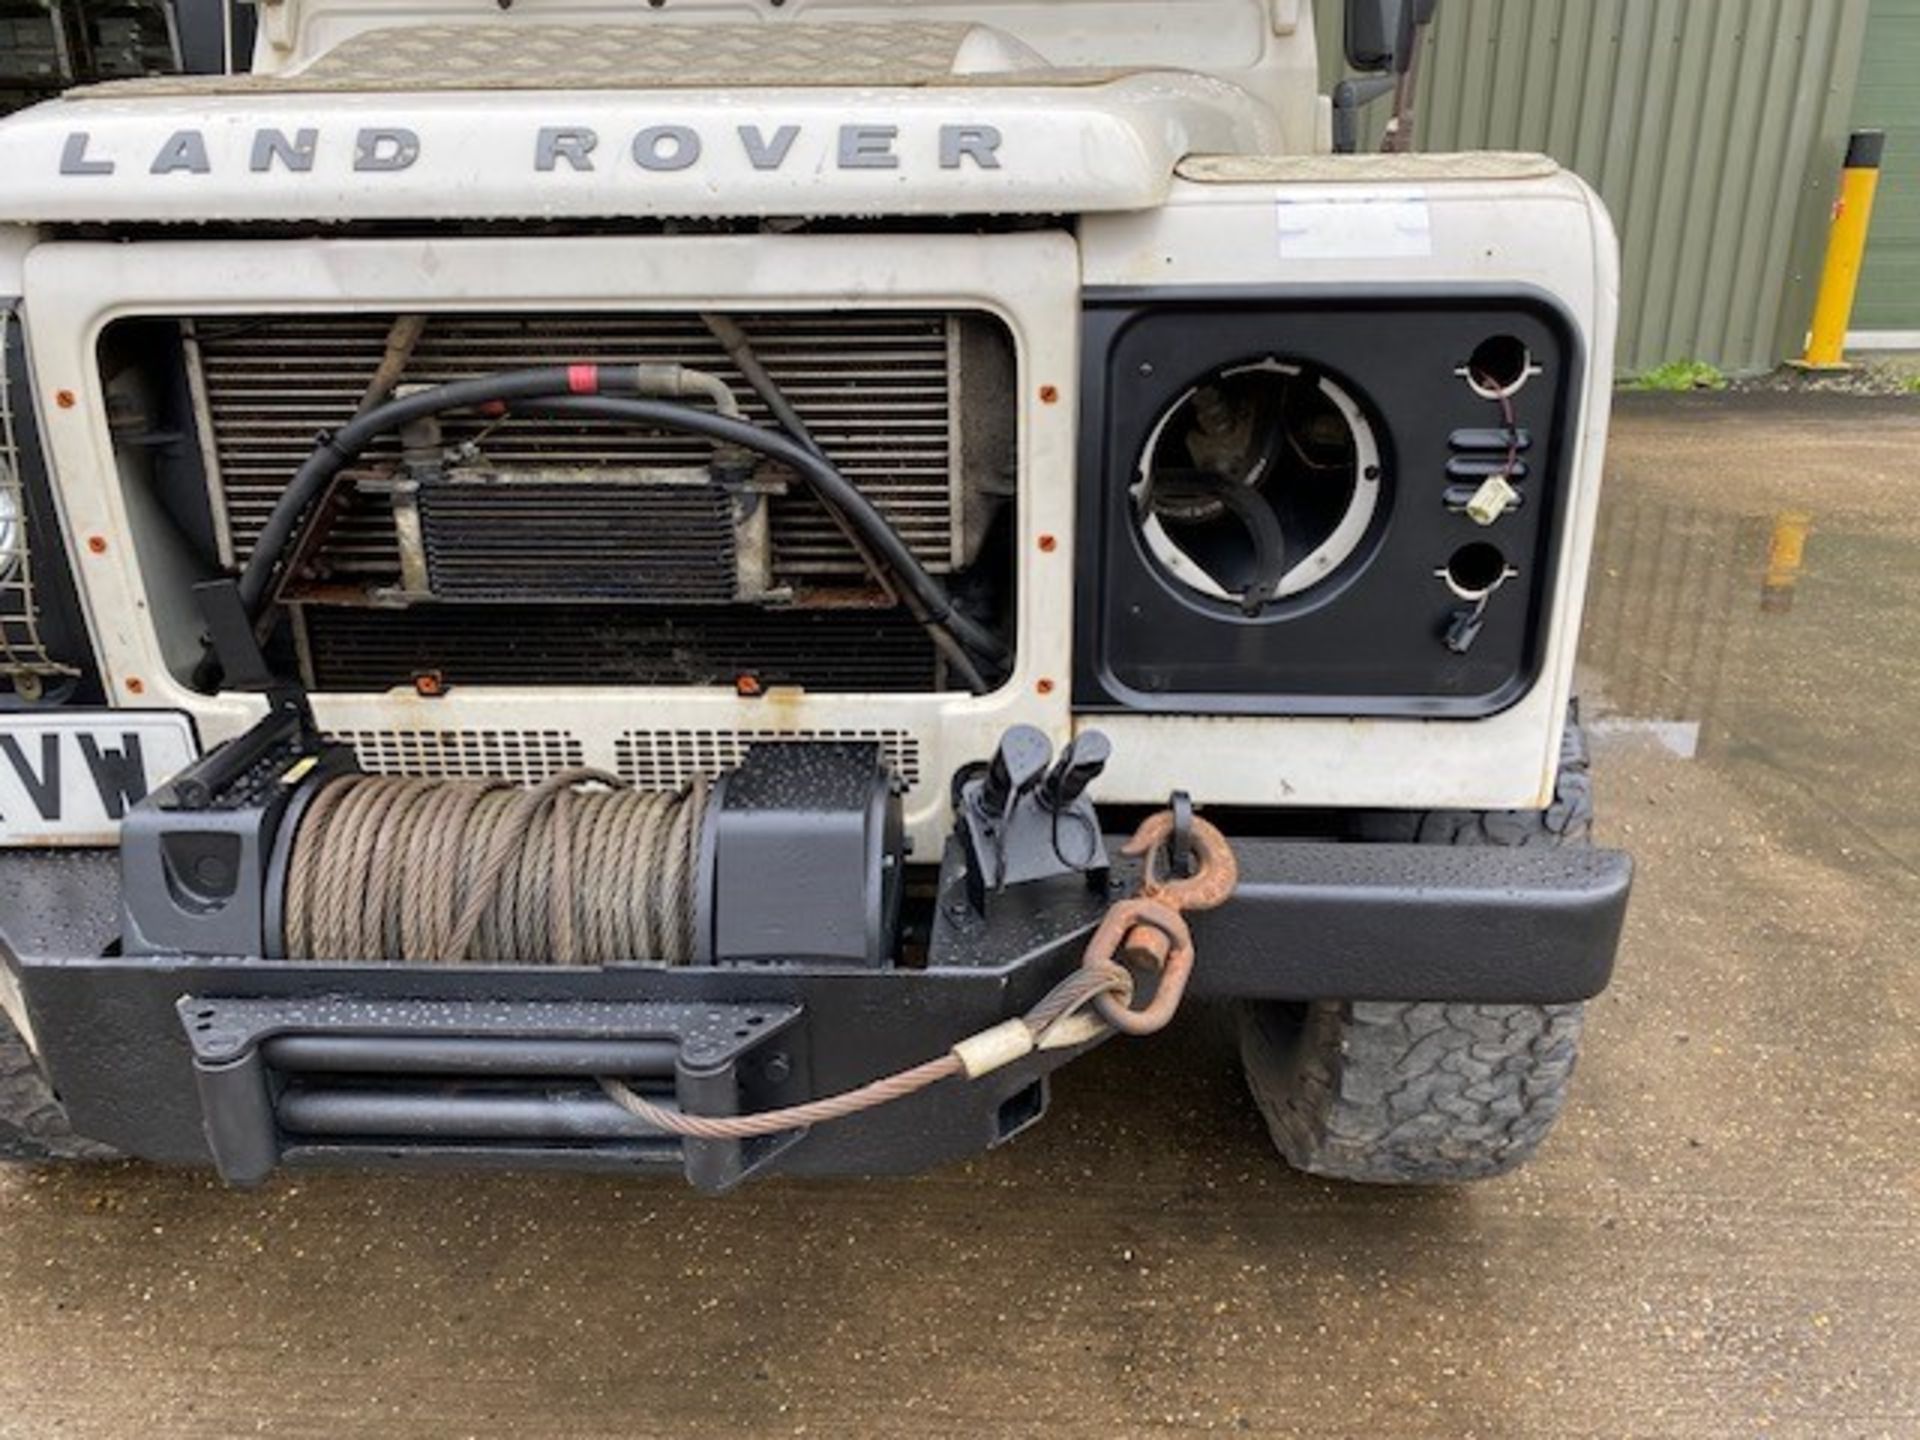 Land Rover Defender 110 2.4 Utility (mobile workshop) - Image 11 of 64